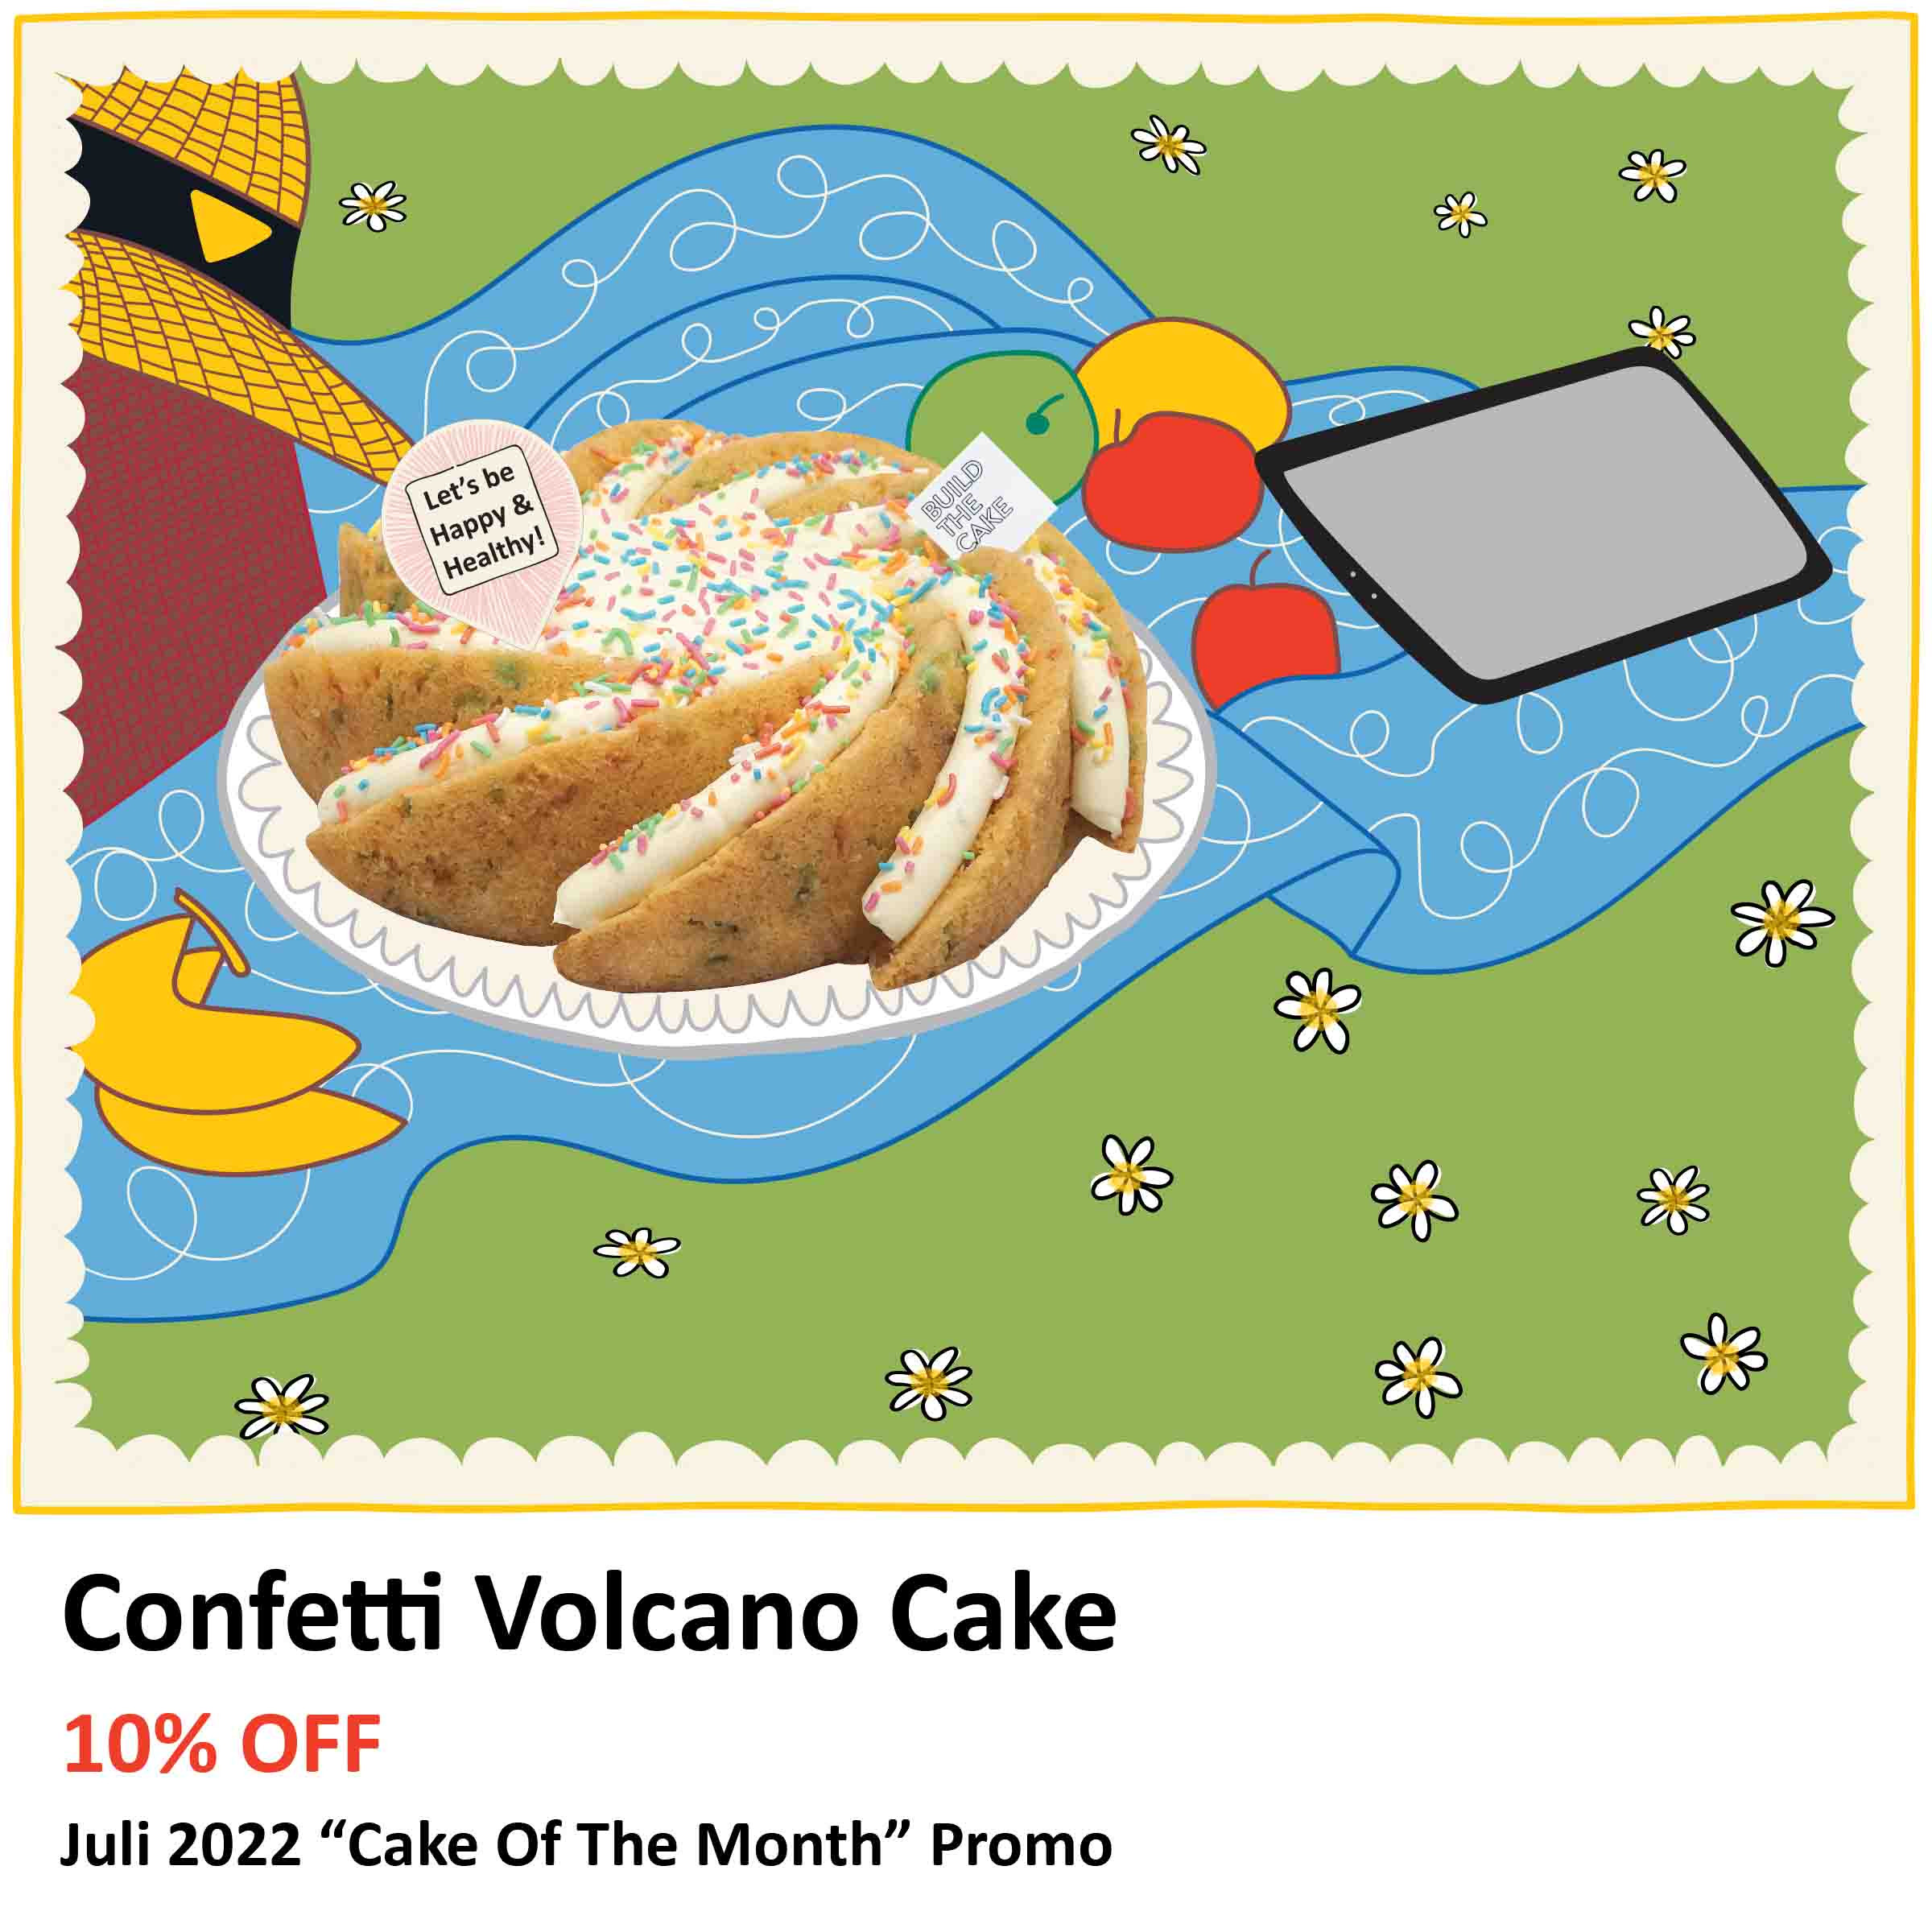 Confetti Volcano Cake